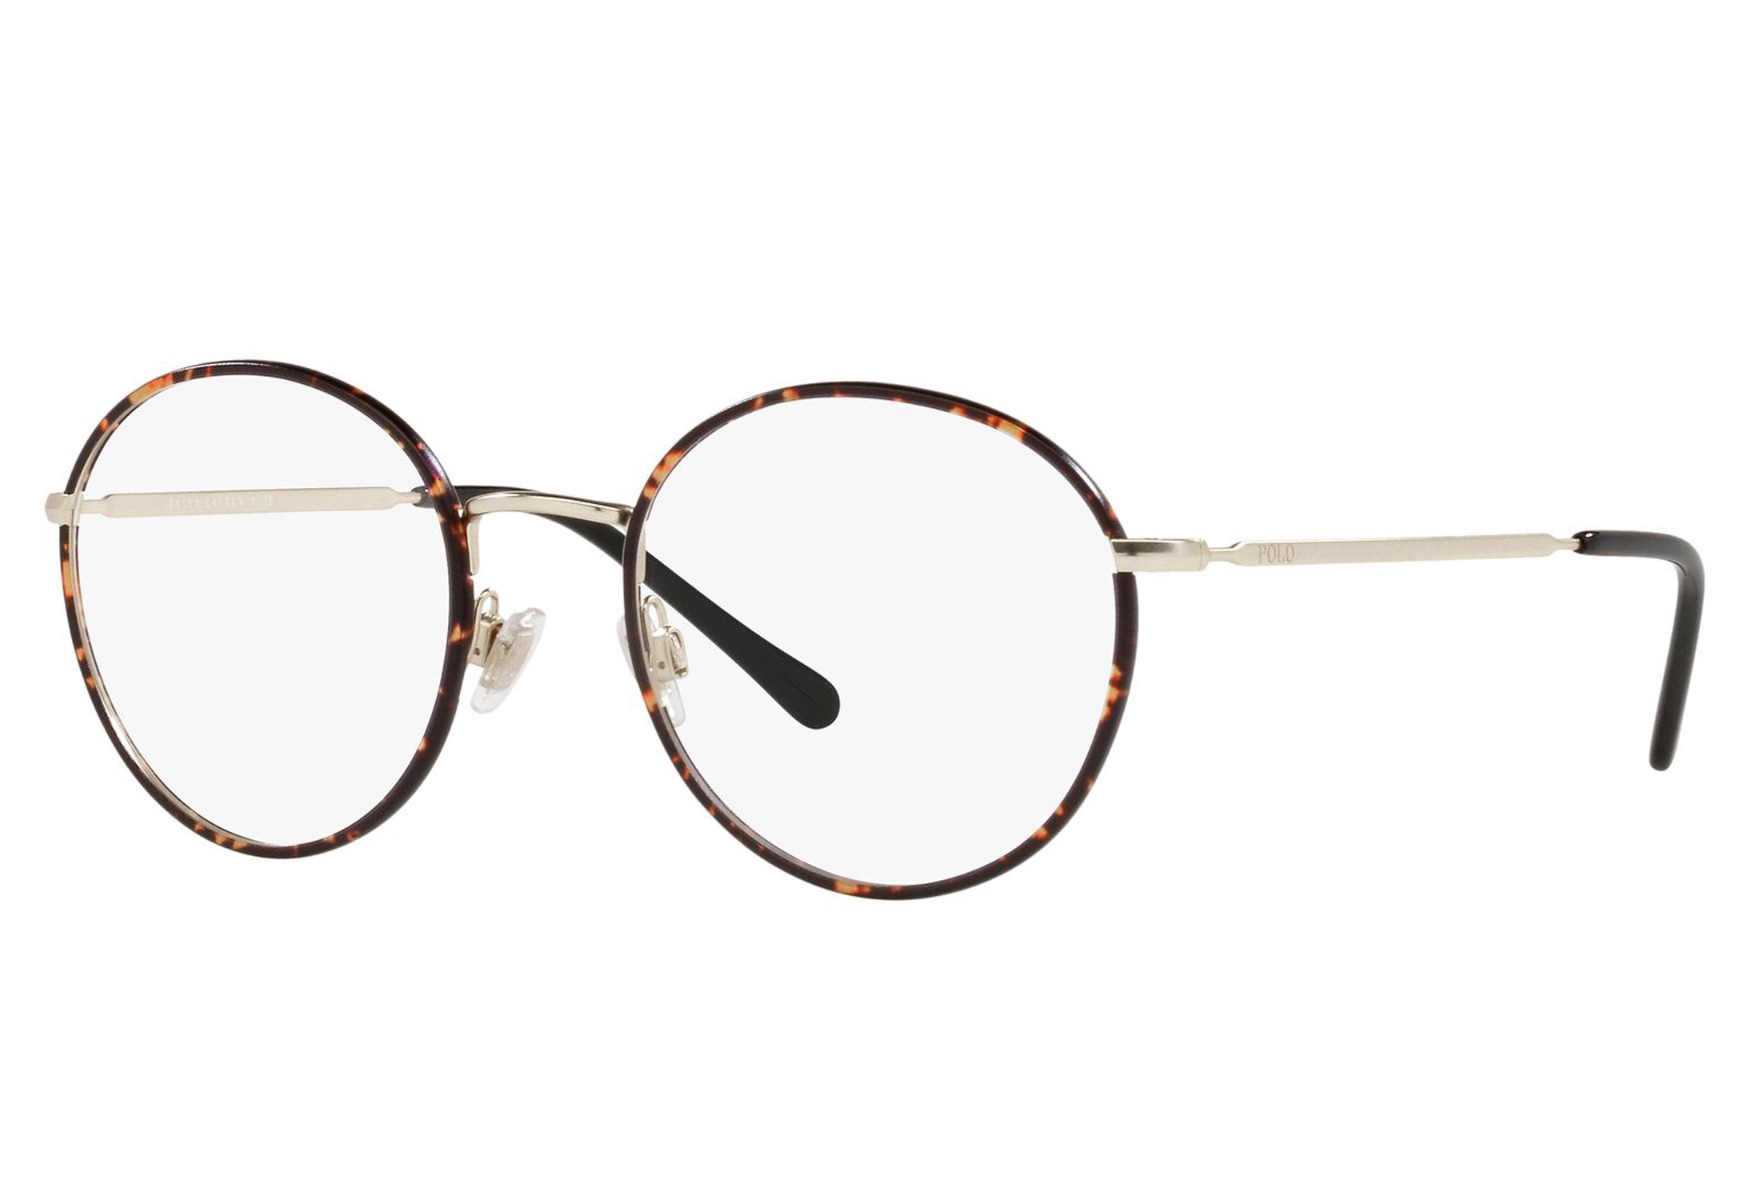 Polo briller - ph2201 5003 - Gull, Mønstret, Medium Hel ramme i Metall, Plast - Rund